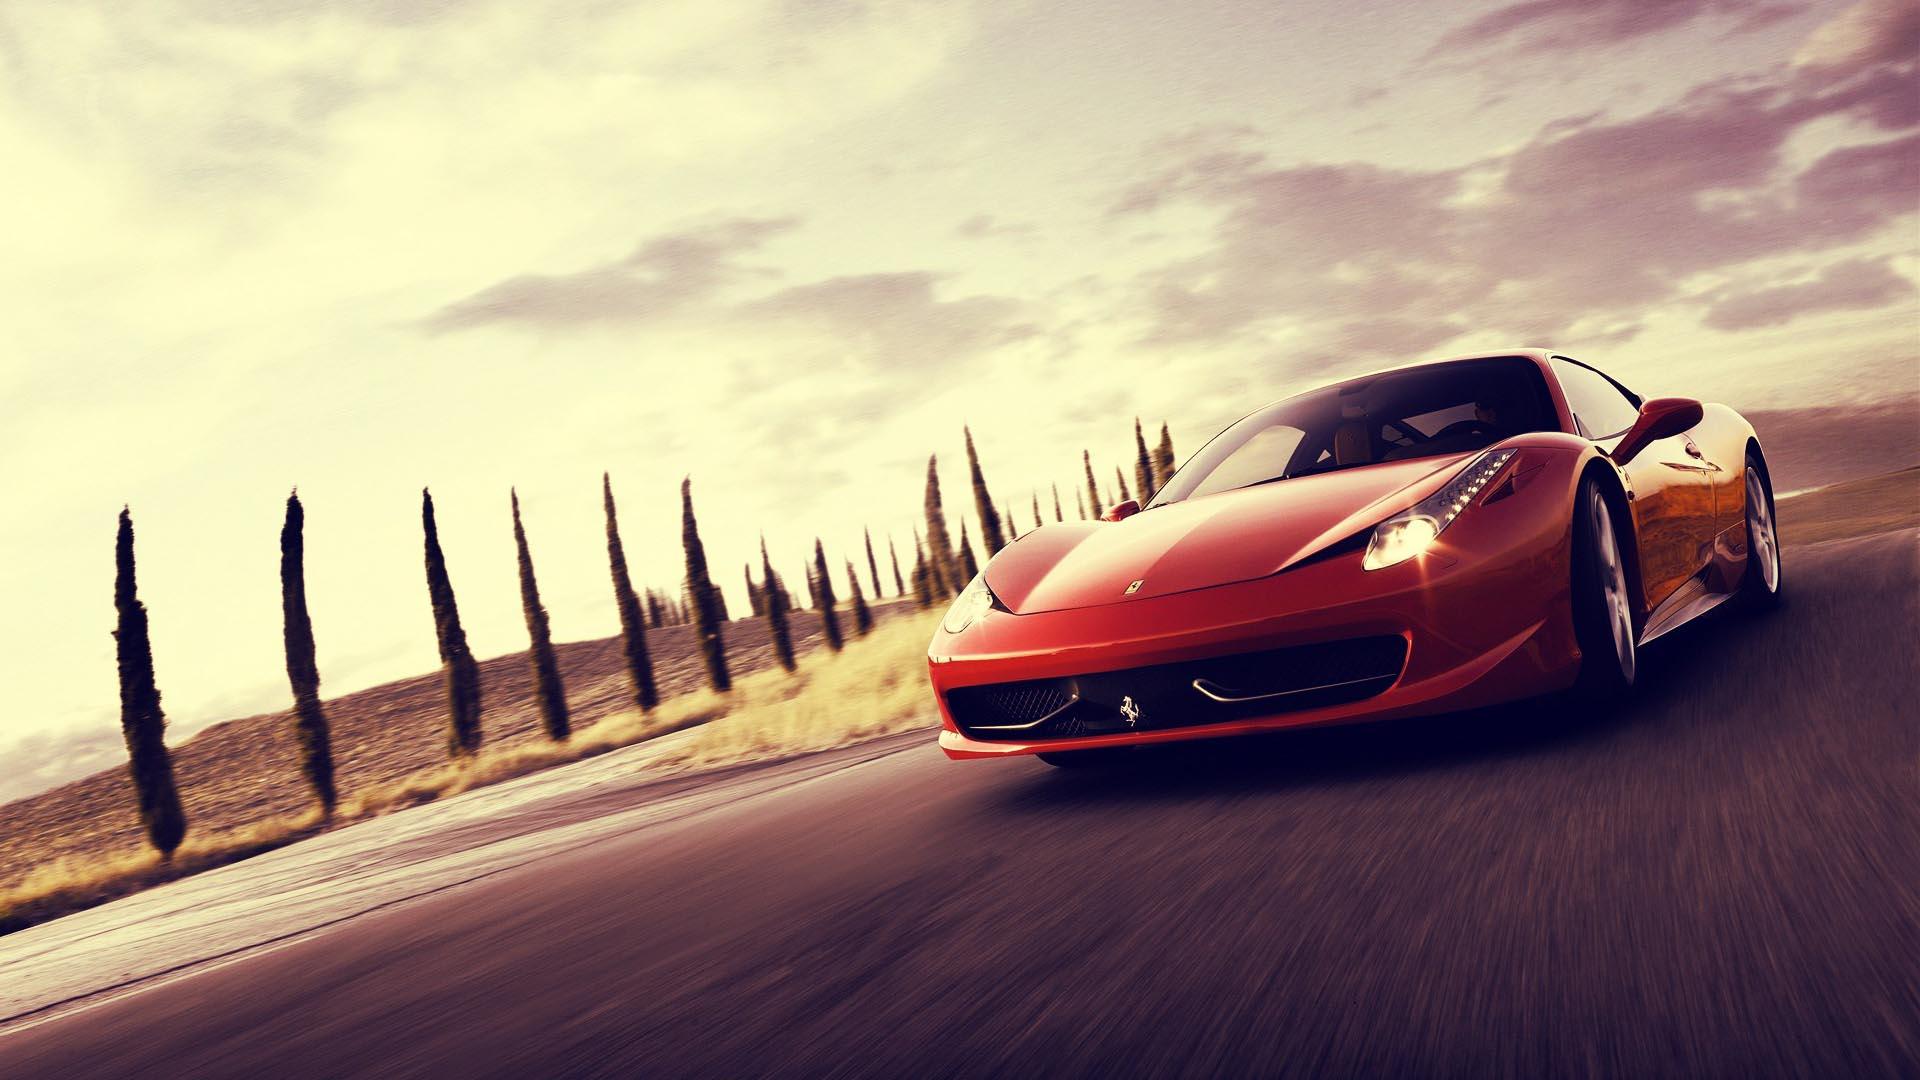 Vehicles For > Red Ferrari Cars Wallpaper